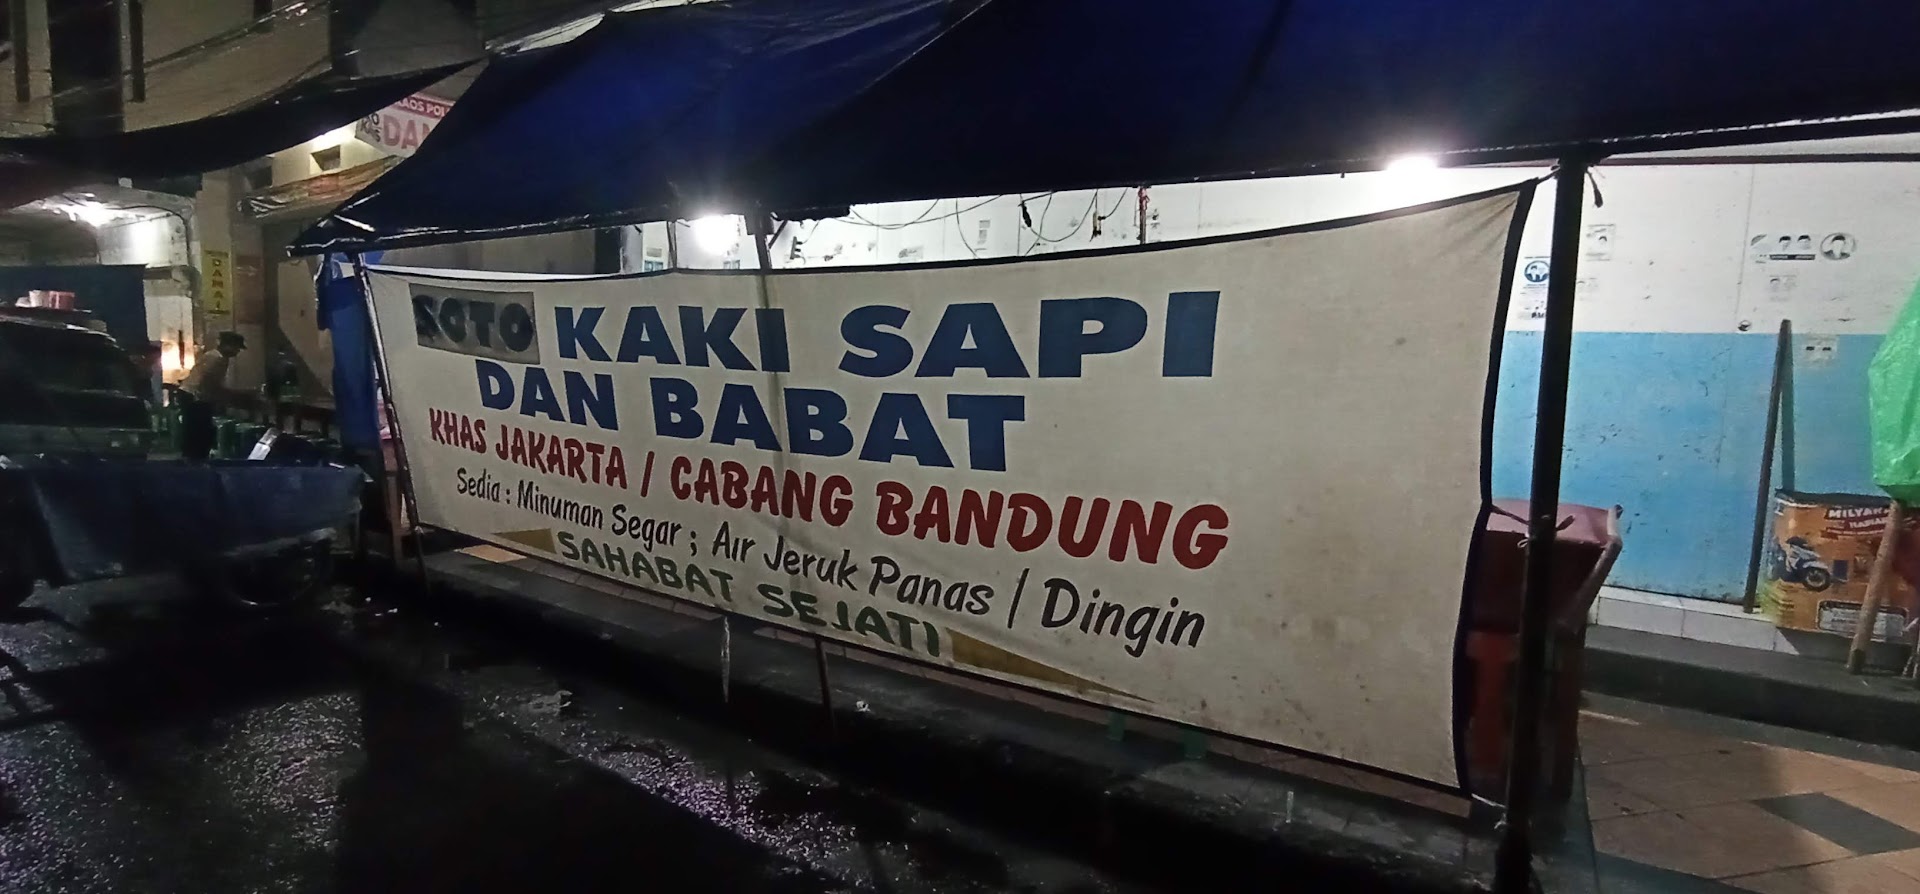 Soto Kaki Sapi Dan Babat Khas Jakarta Photo